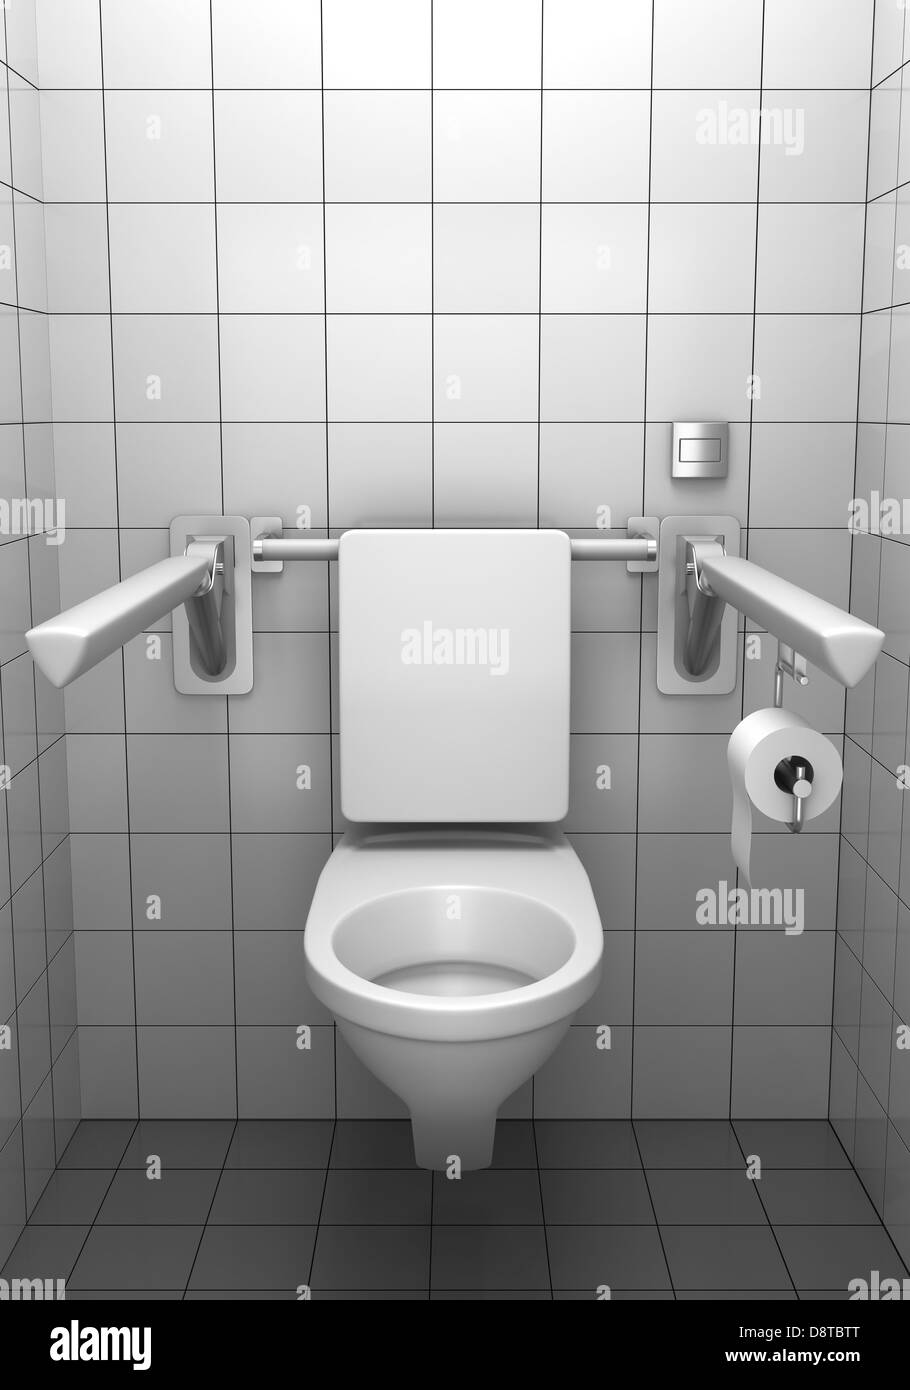 Toilettes pour handicapés avec céramique blanche sur mur Banque D'Images